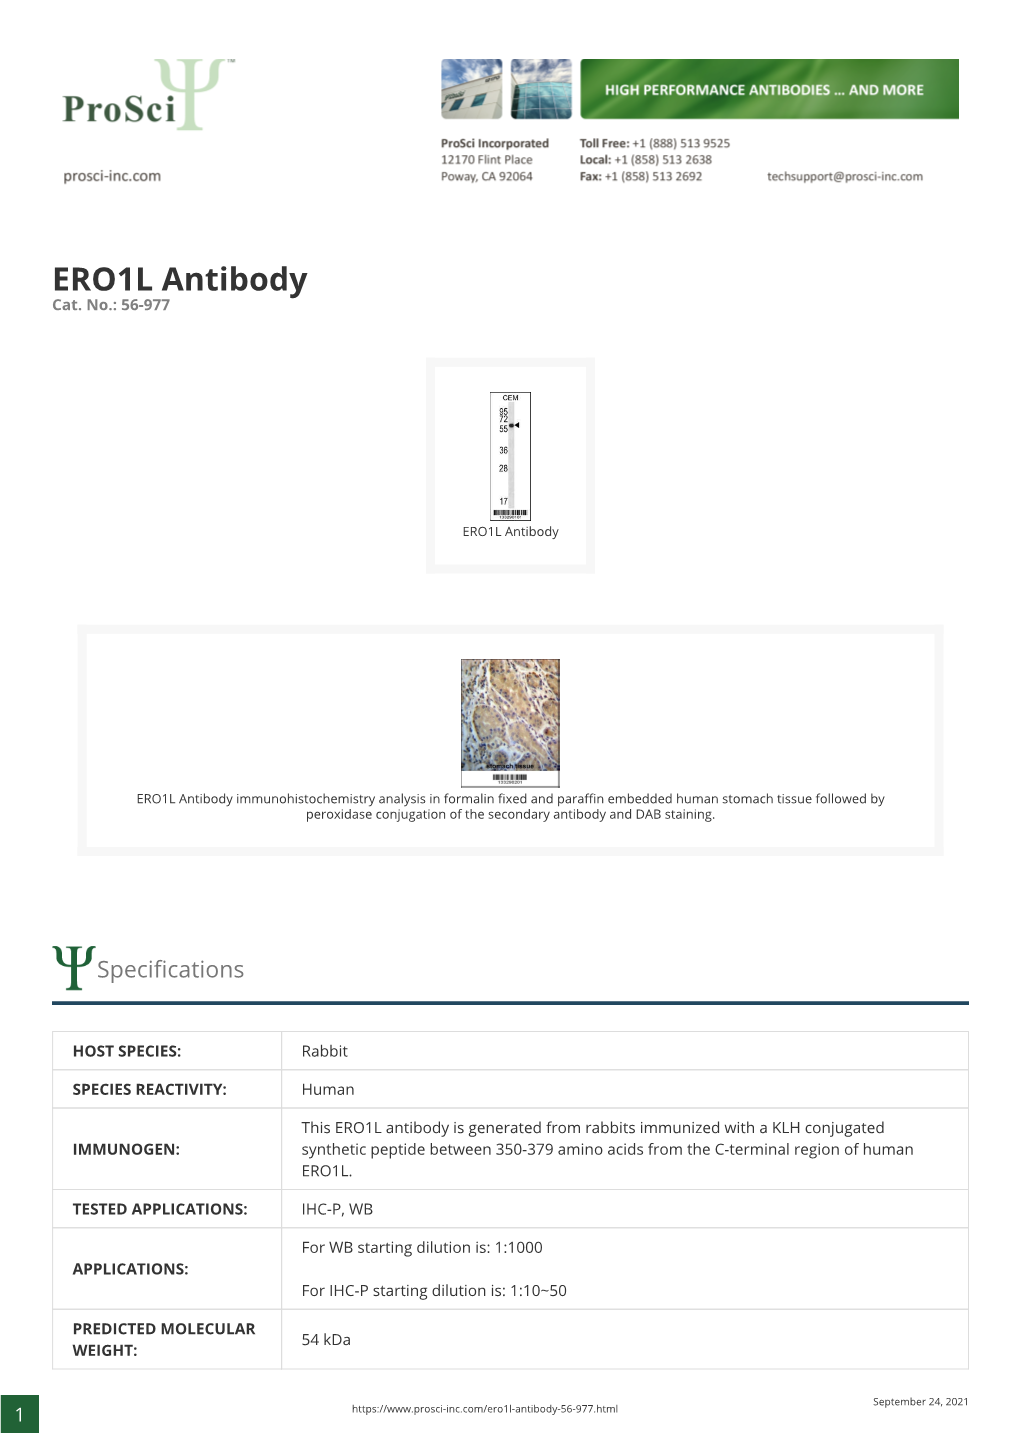 ERO1L Antibody Cat